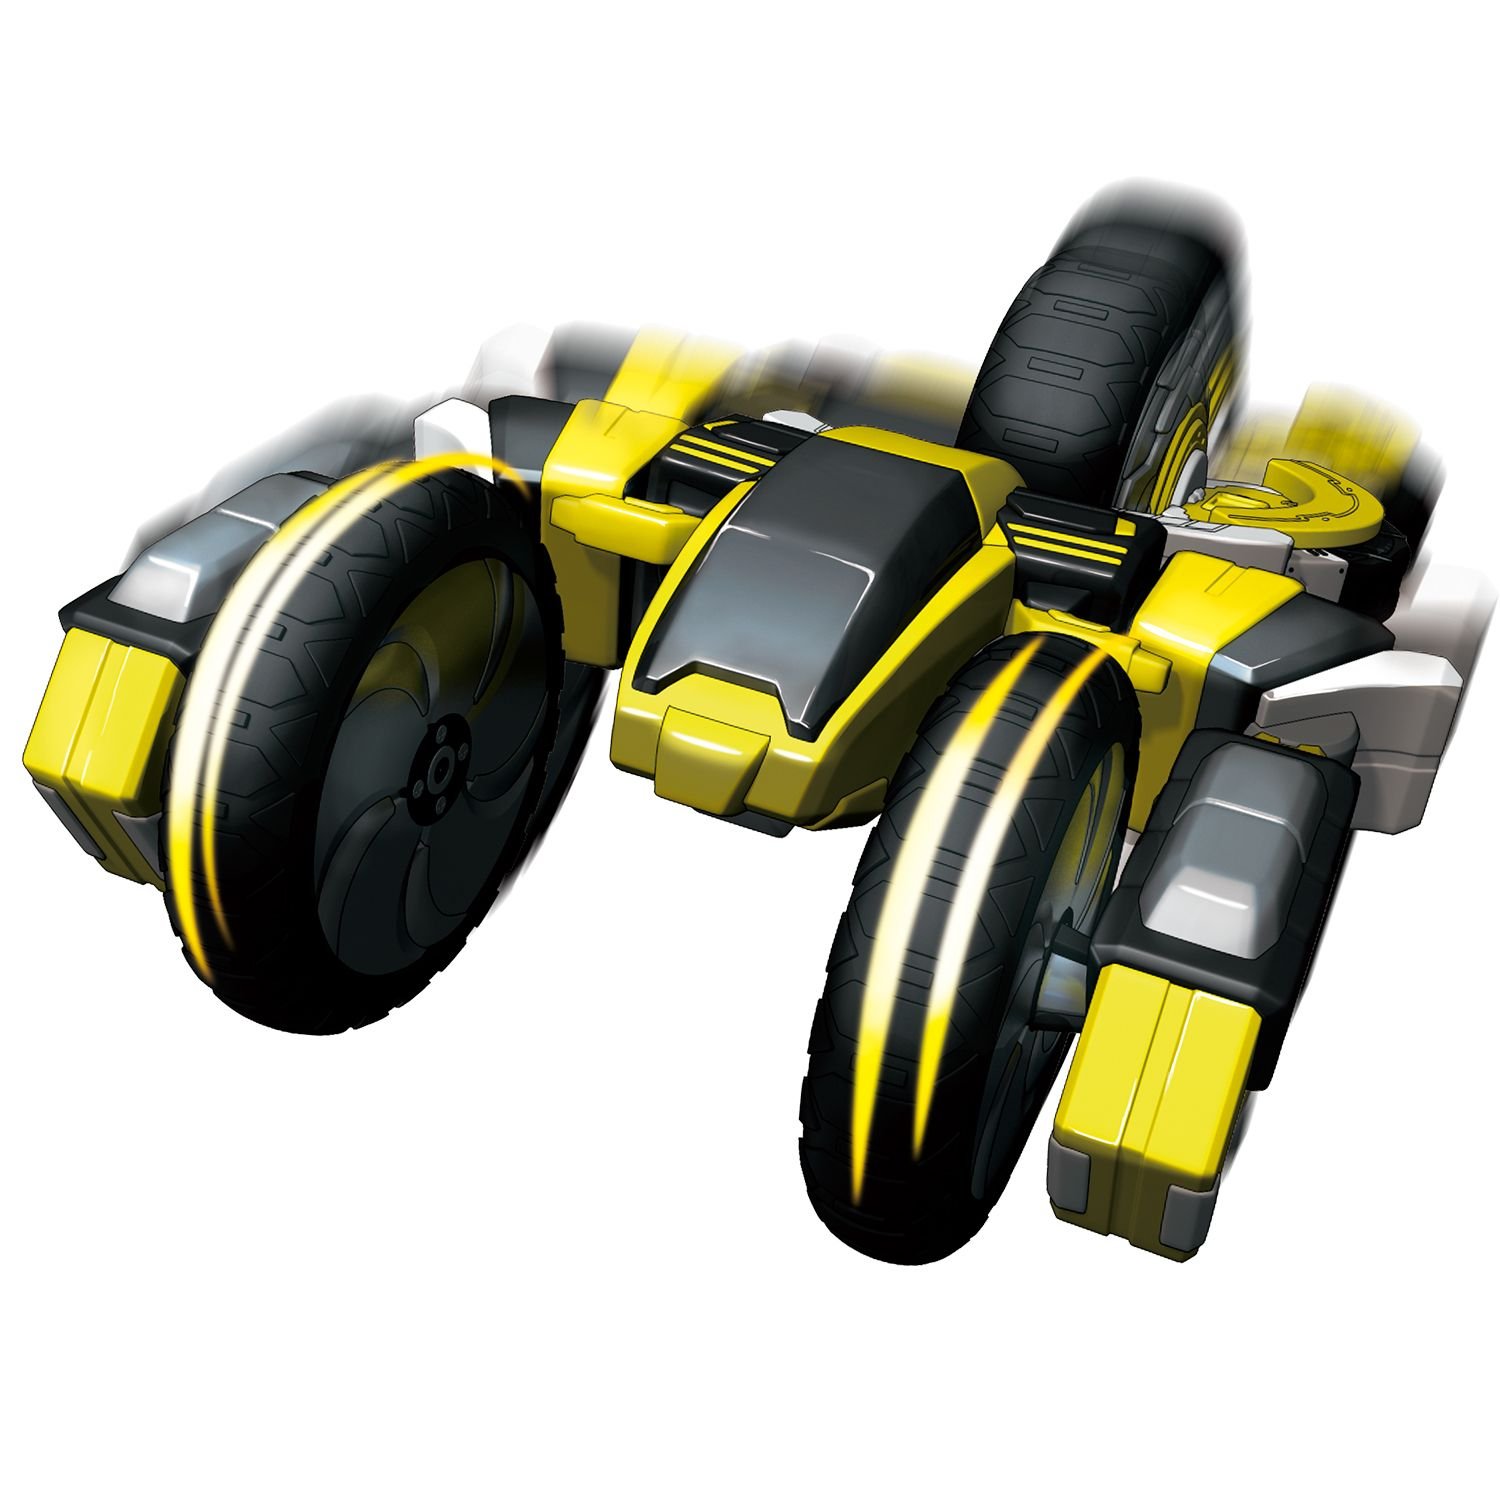 Игровой набор волчков-трансформеров 2 в 1 Spin Racers – Фантом и Молот с аксессуарами  